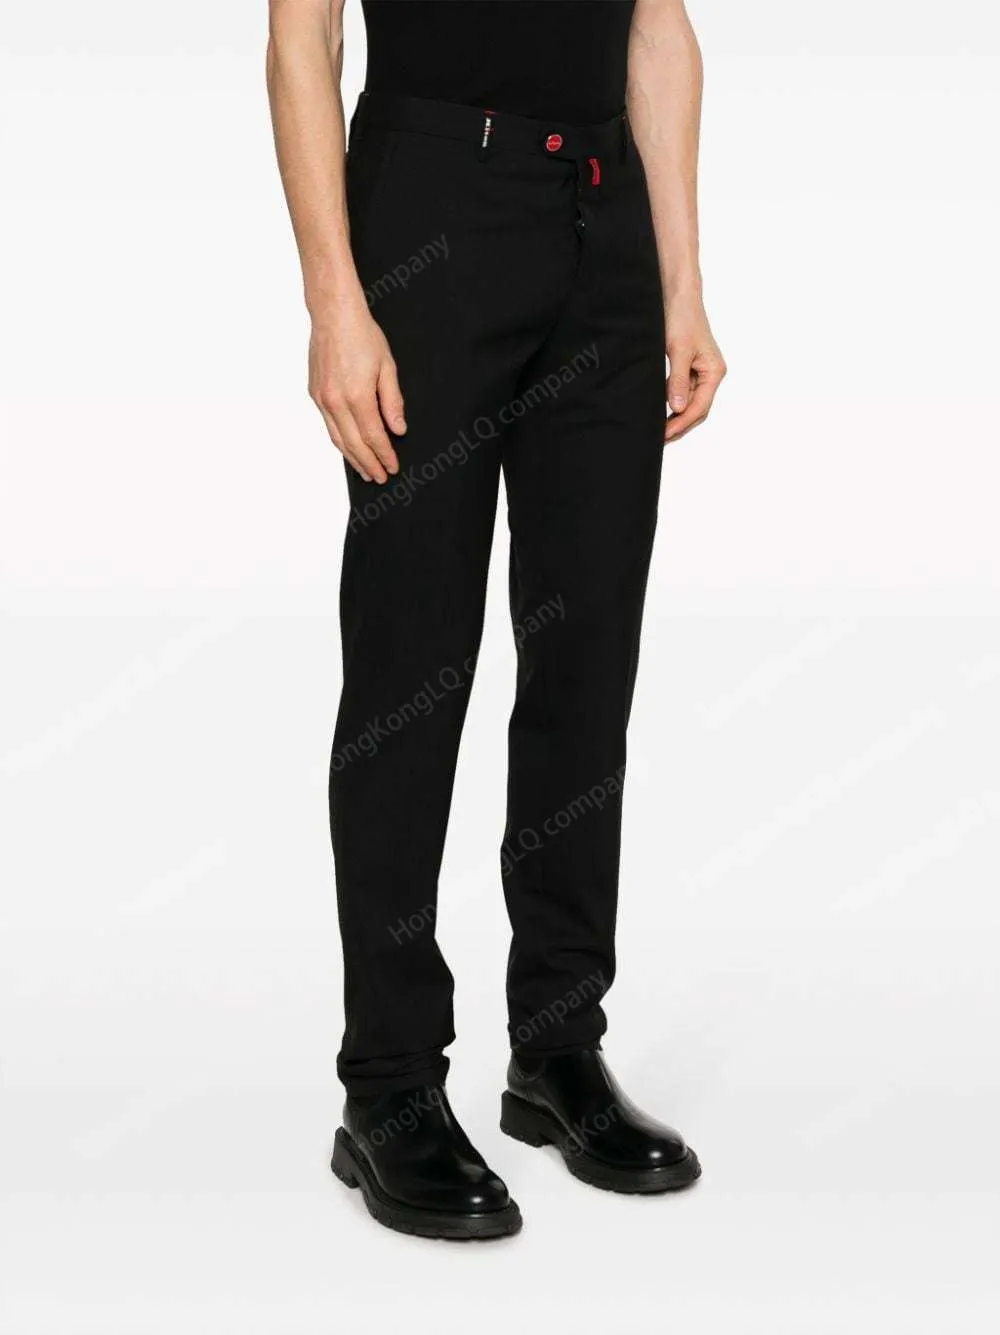 Дизайнерские мужские брюки на 100% шерстяные логоседенные брюки с логоизоном